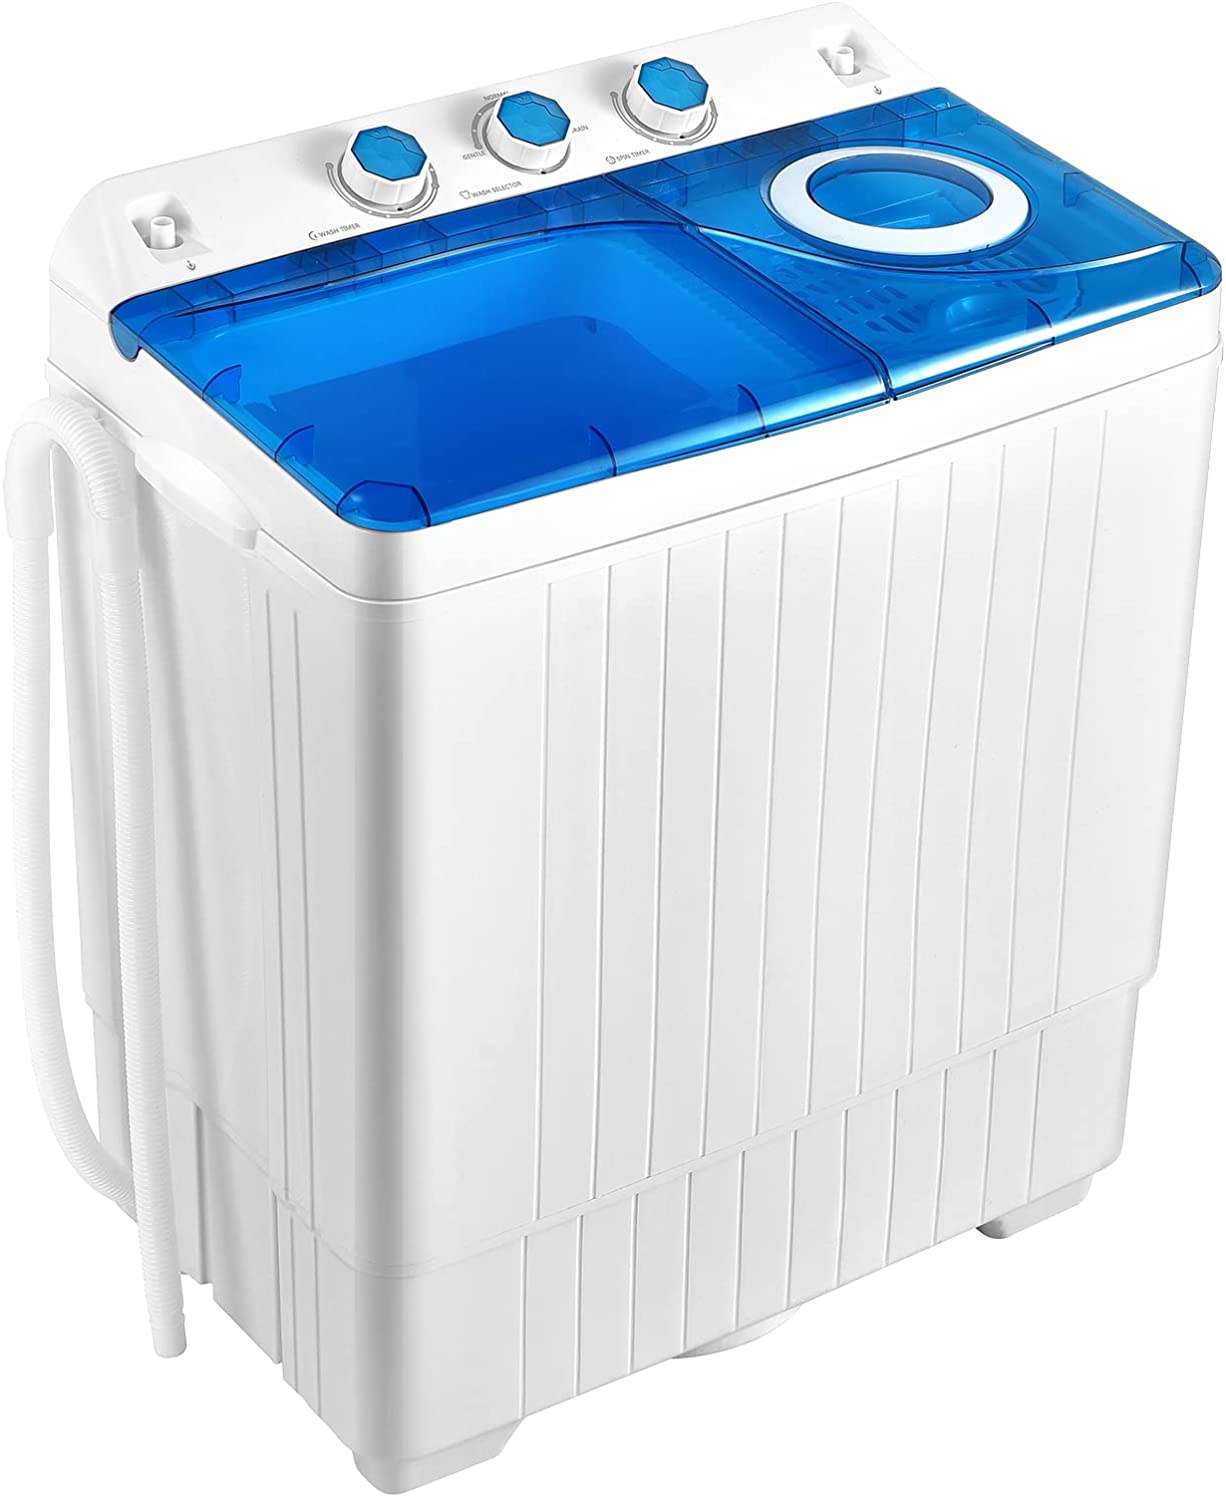 Lavadora portátil Giantex, combinación de lavadora y secadora 2 en 1,  capacidad de 26 libras, 18 libras de lavado, centrifugado de 8 libras, con  control de temporizador, bomba de drenaje integrada, mini